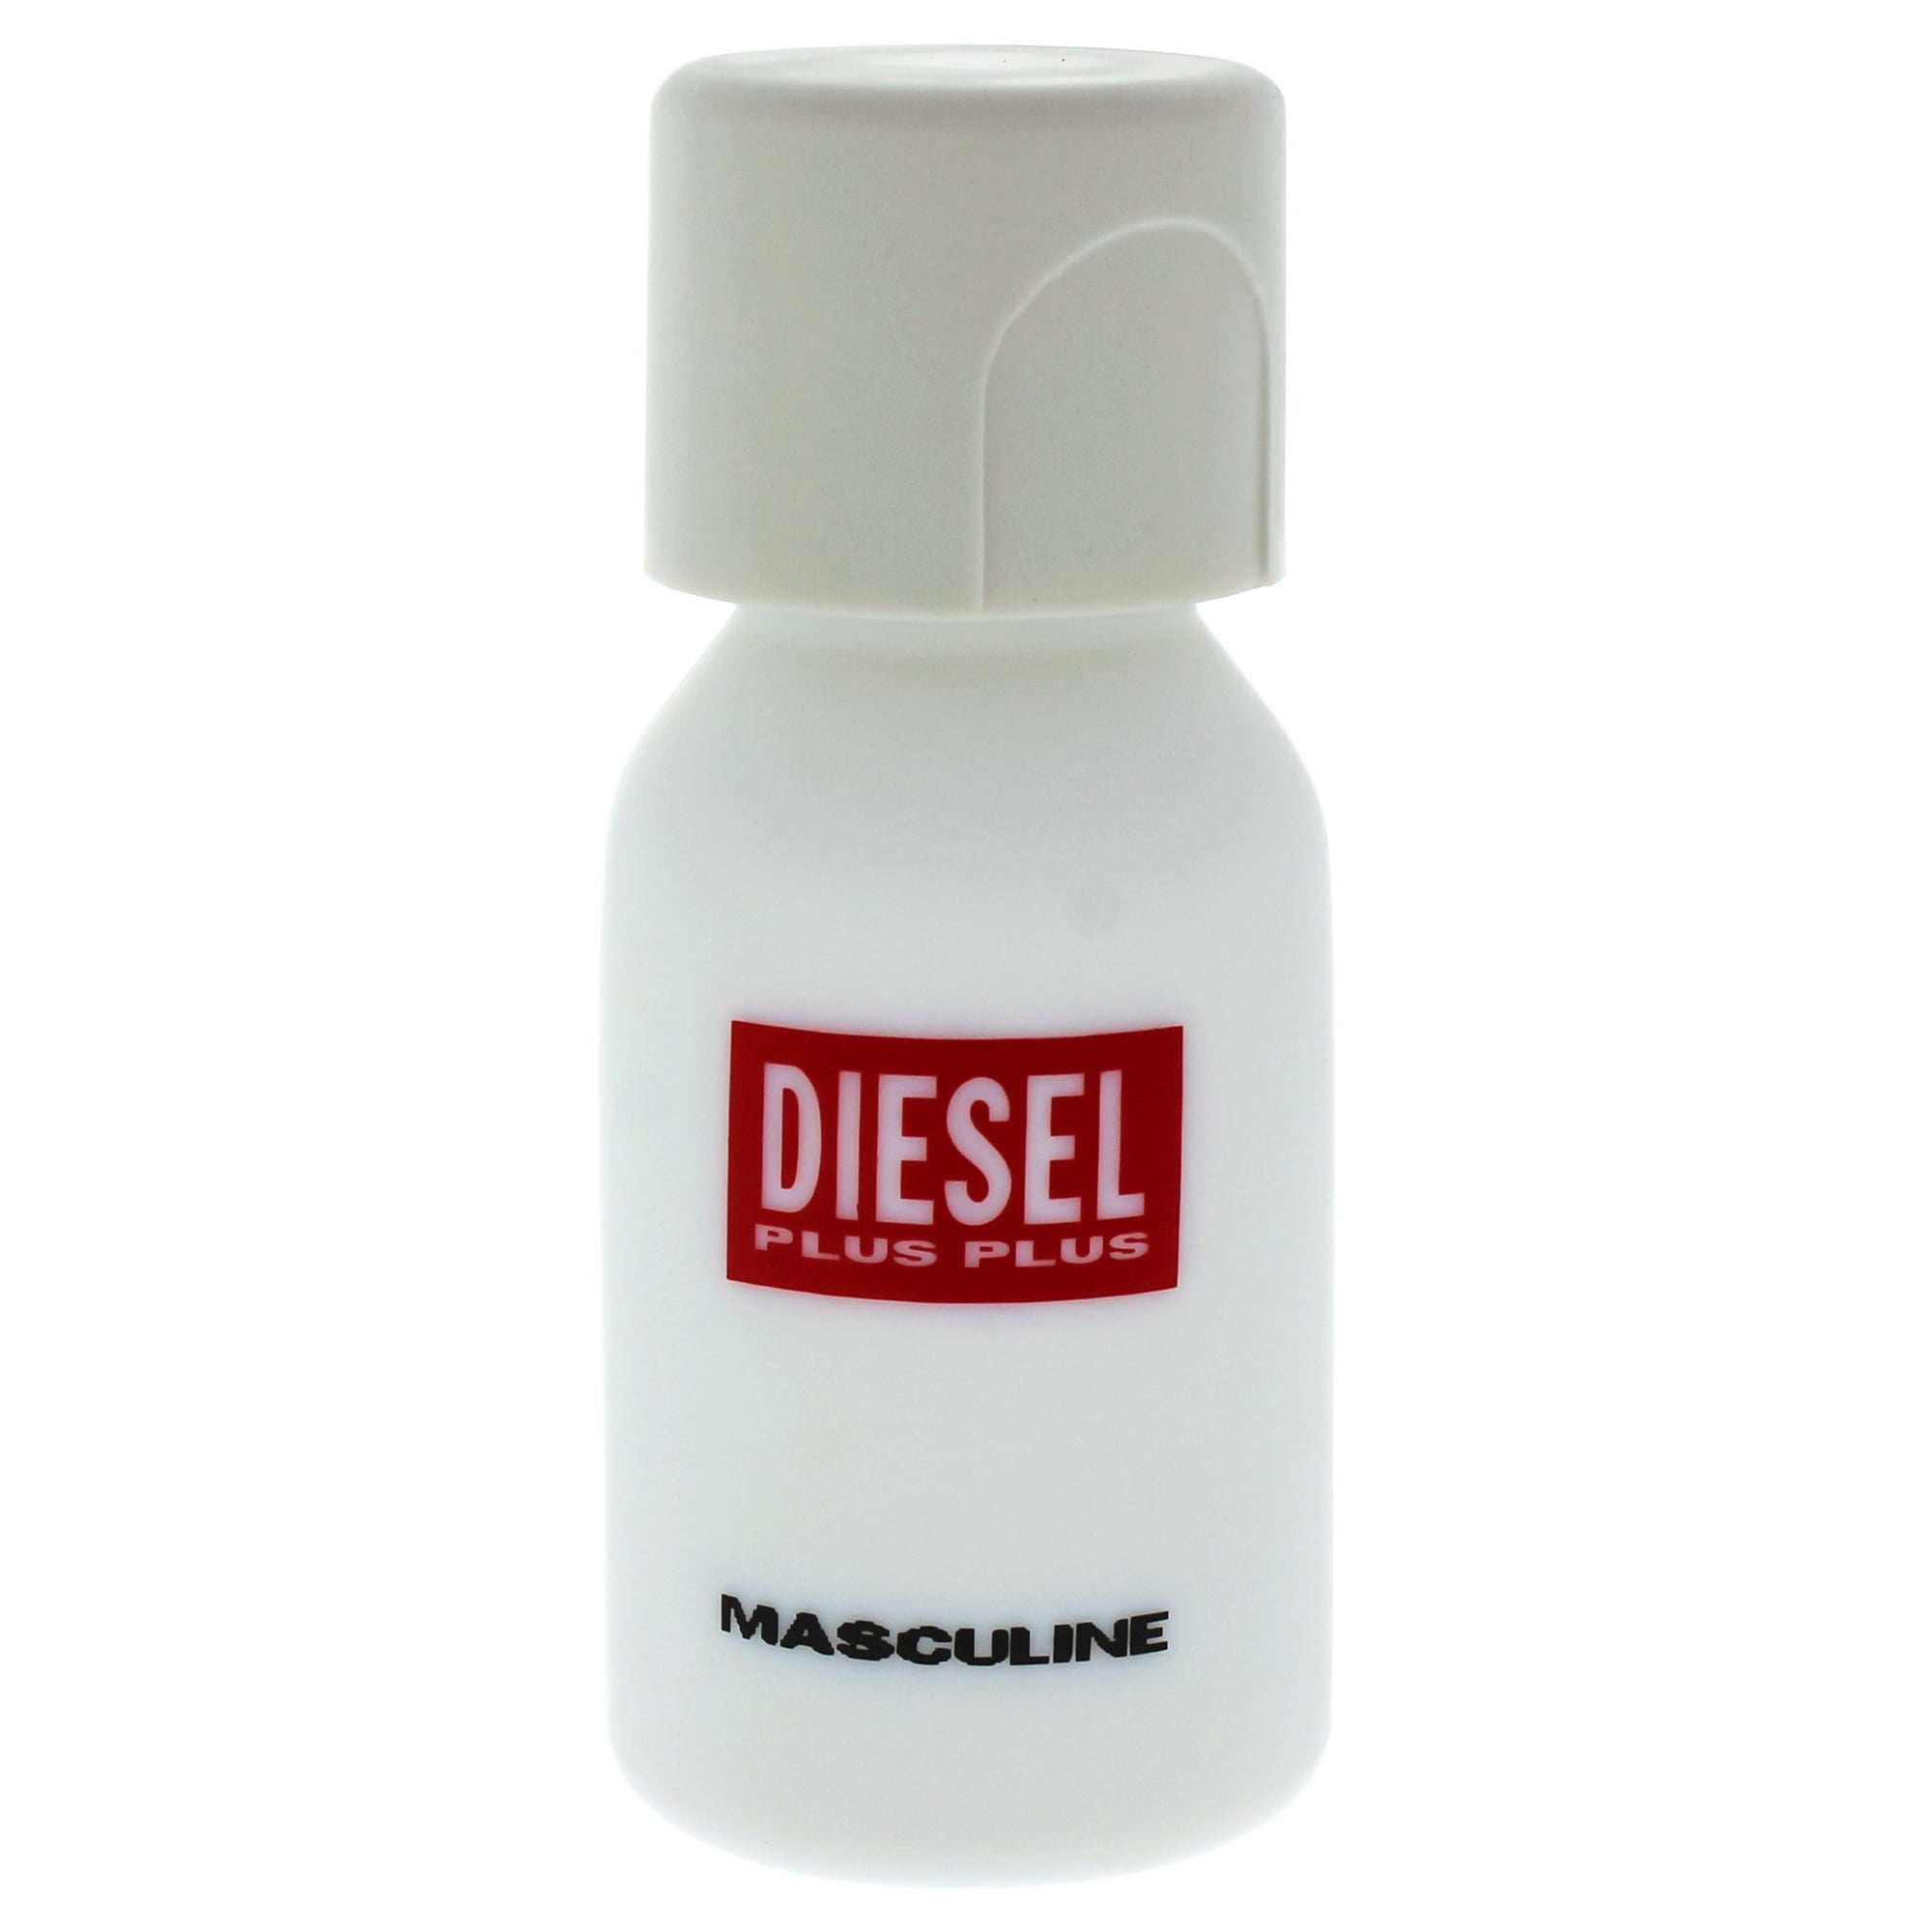 Diesel Plus Plus Eau de Toilette, Cologne for Men, 2.5 Oz